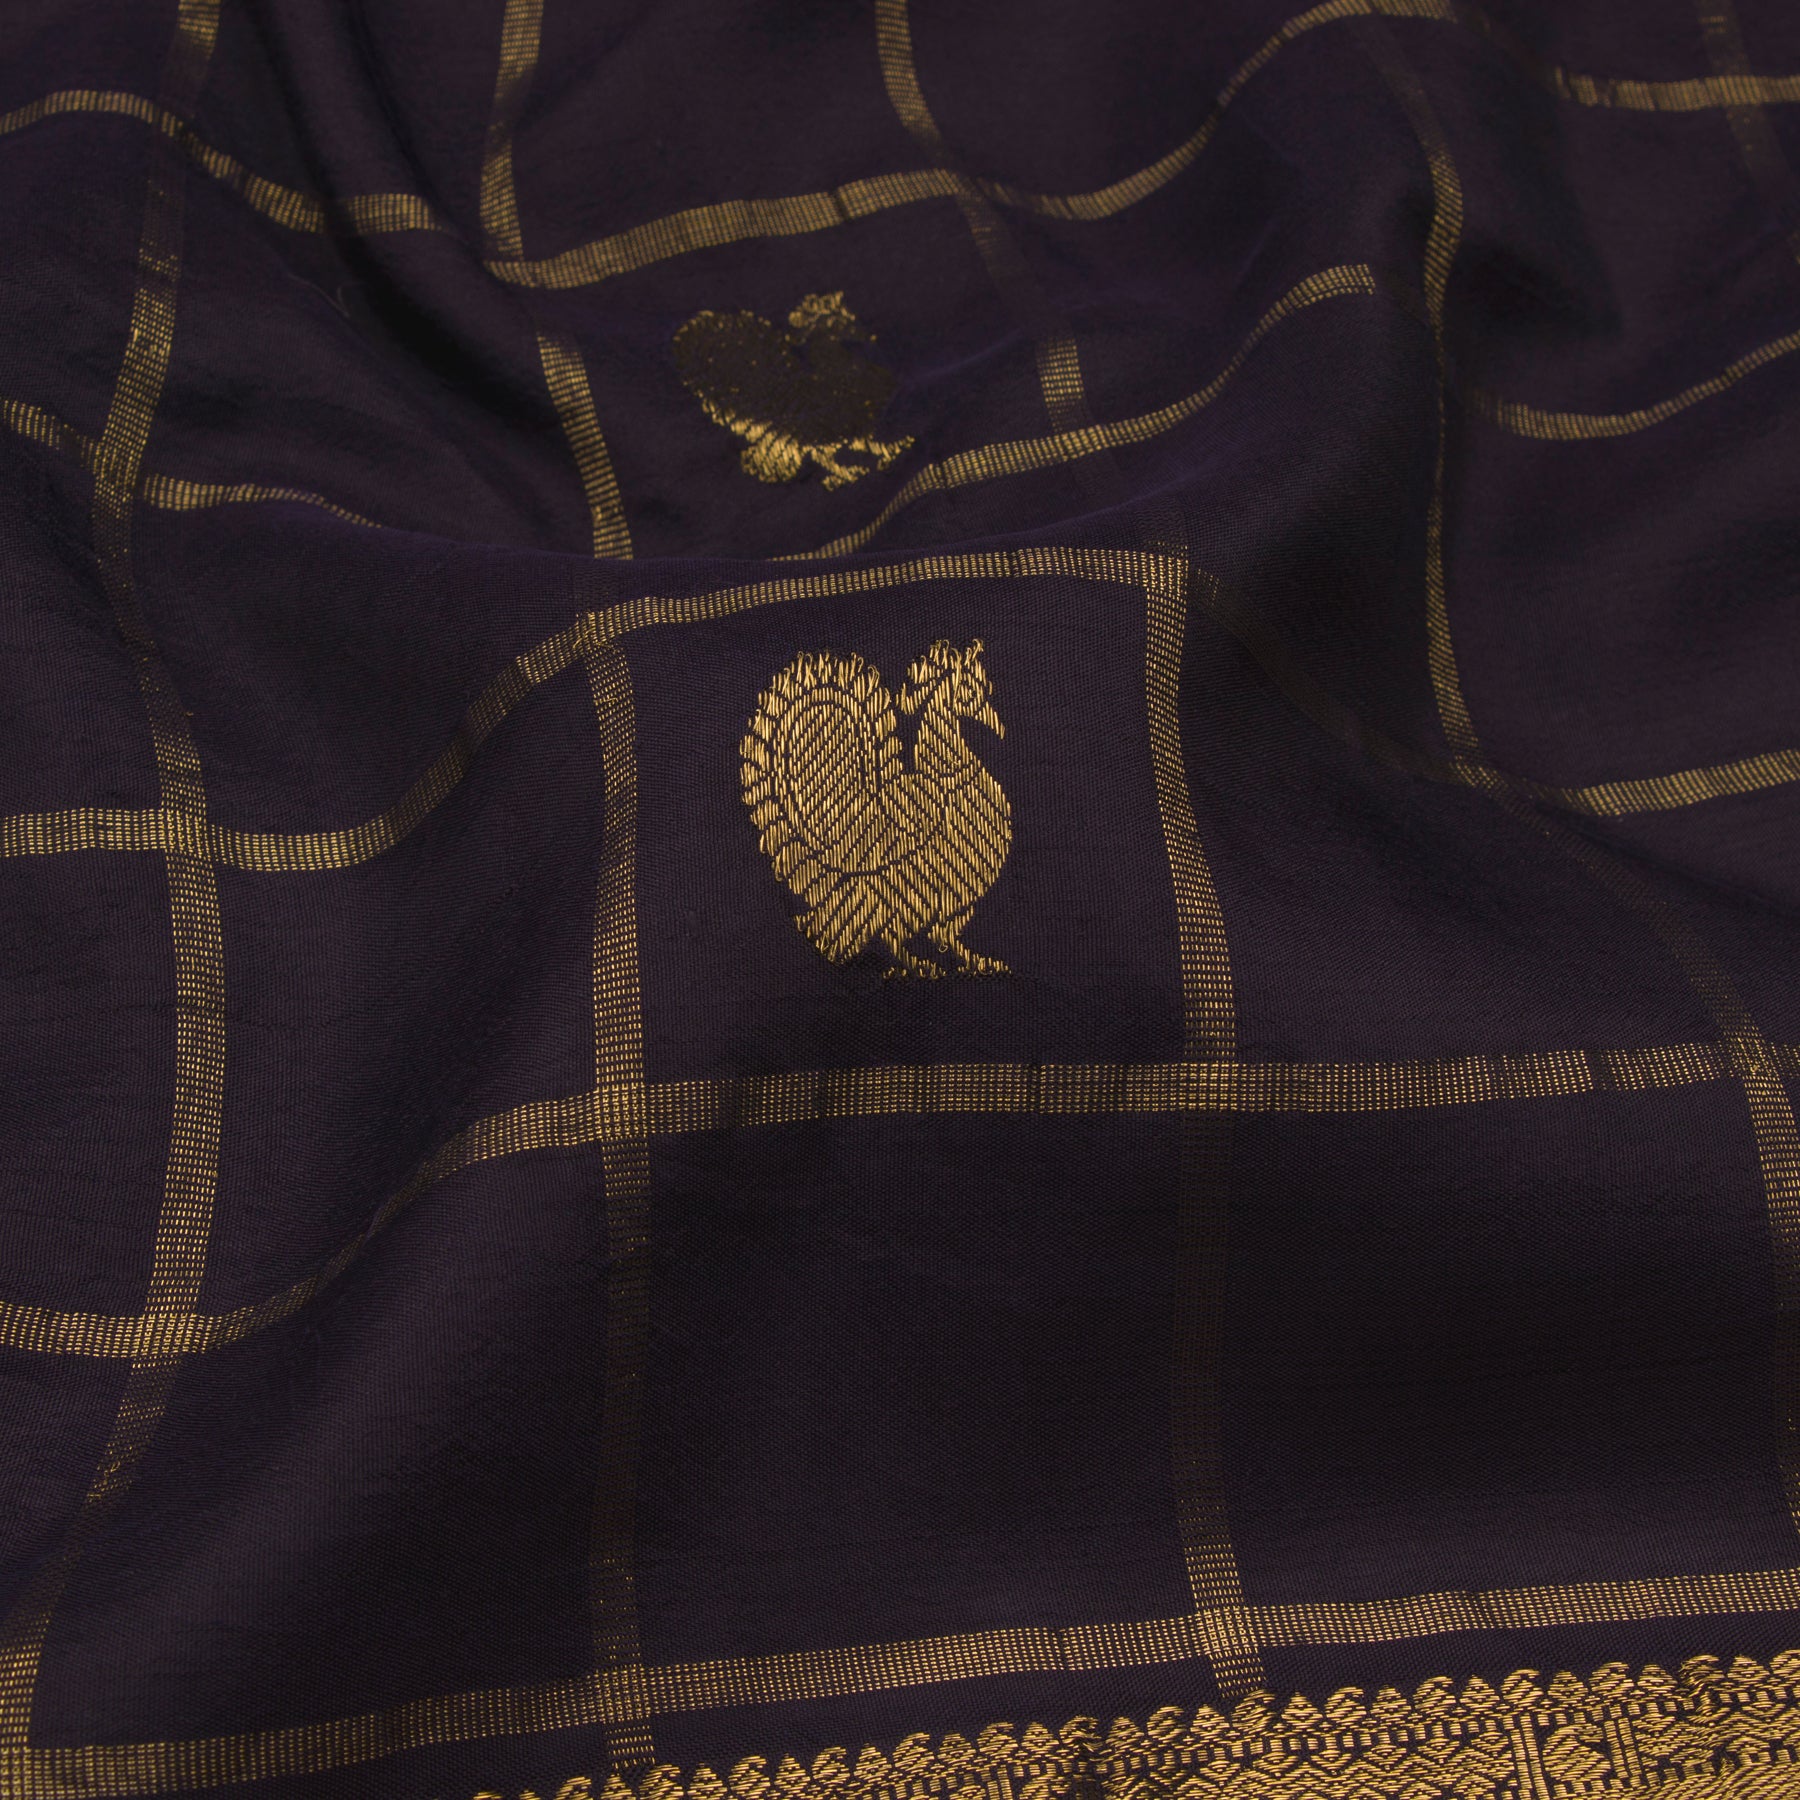 Kanakavalli Kanjivaram Silk Sari 22-110-HS001-00879 - Fabric View